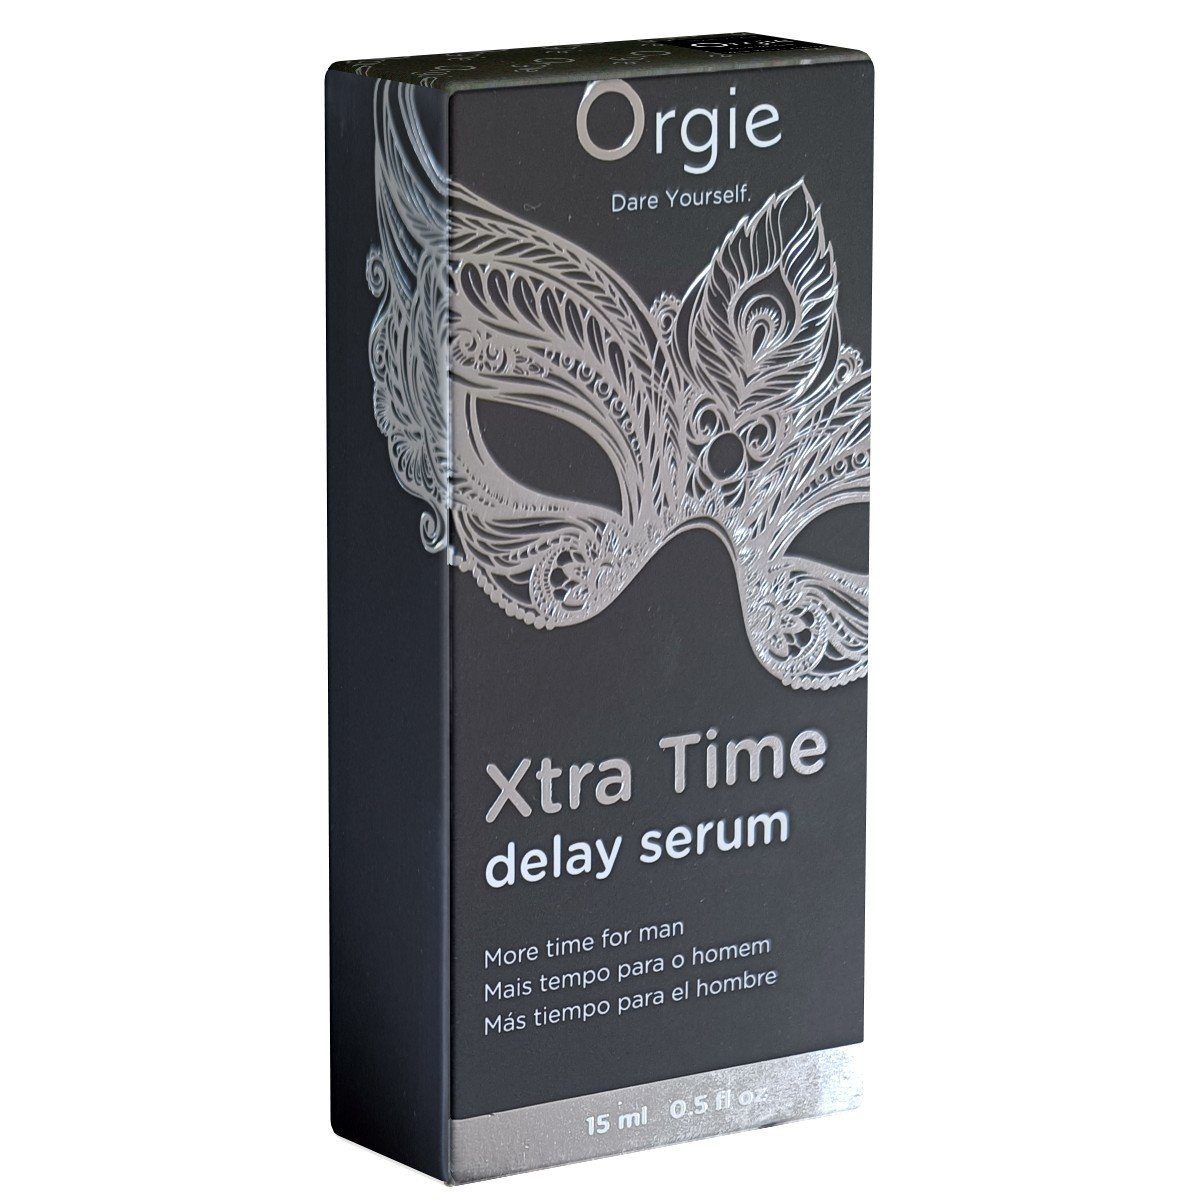 Time Orgie Him, aktverlängerndes Delay Gel 15ml, ein für Xtra Liebesspiel For Serum Verzögerungsmittel langes Flasche mit -